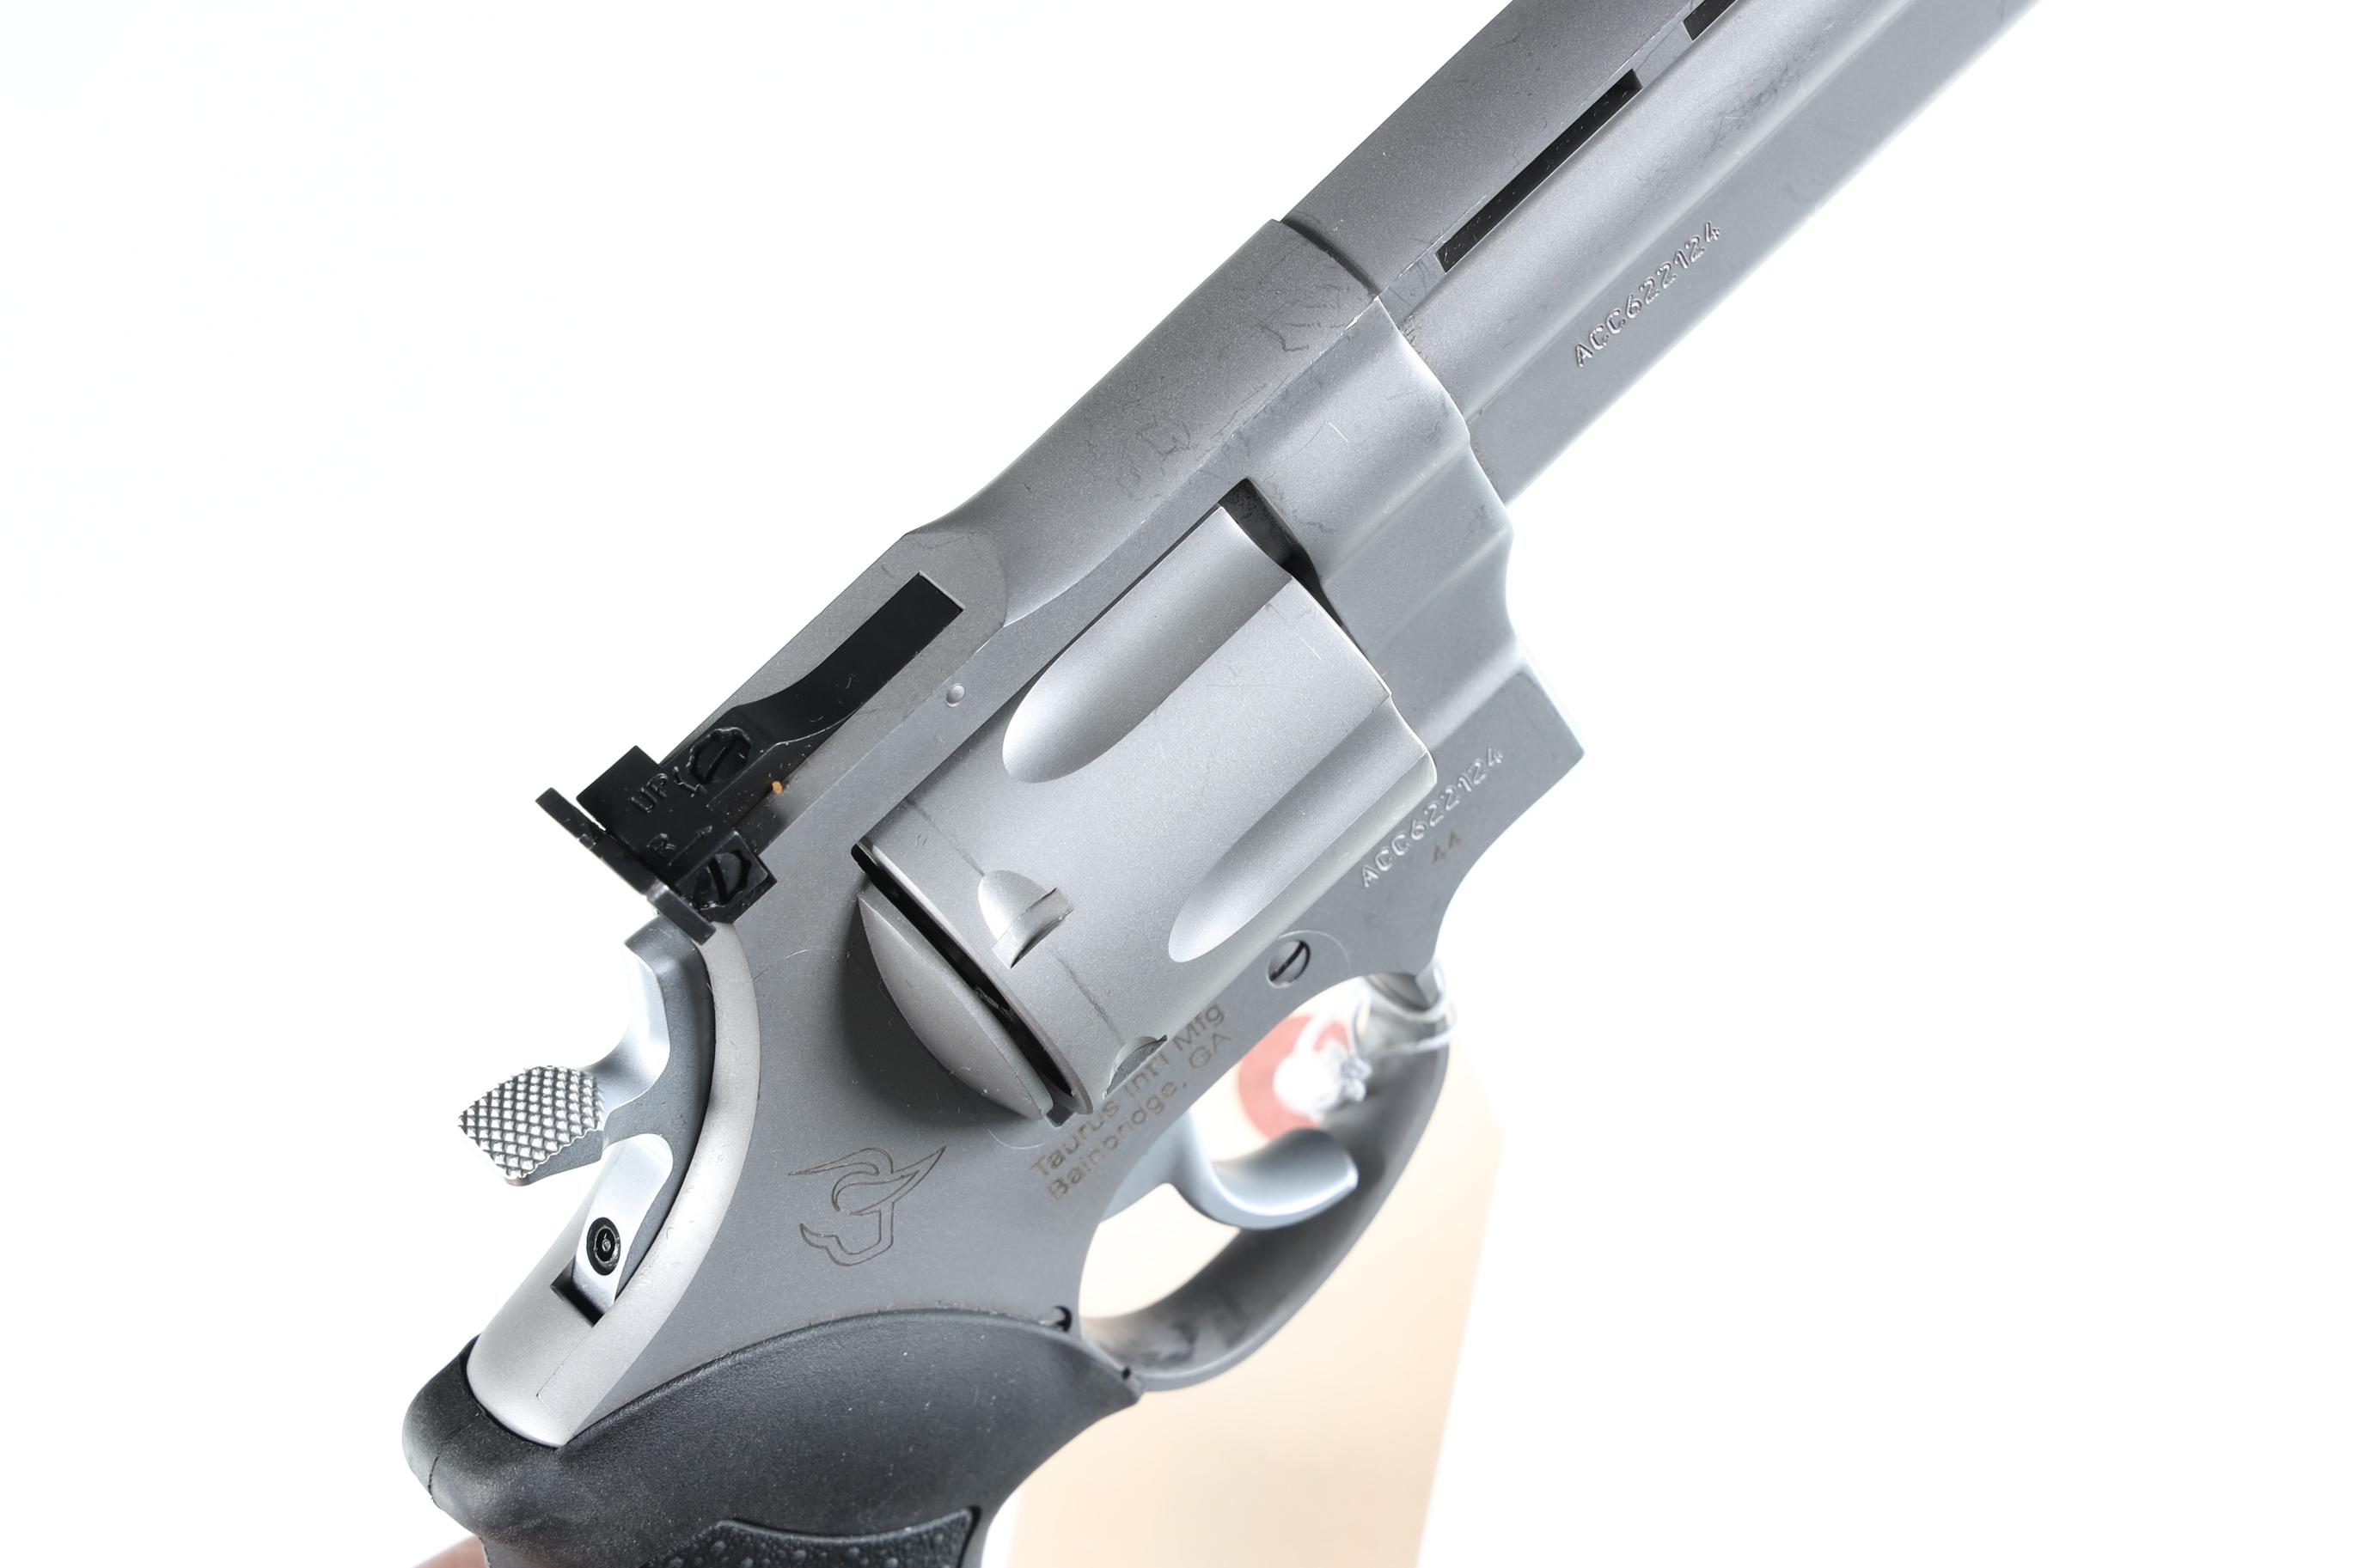 Taurus 44 Revolver .44 mag